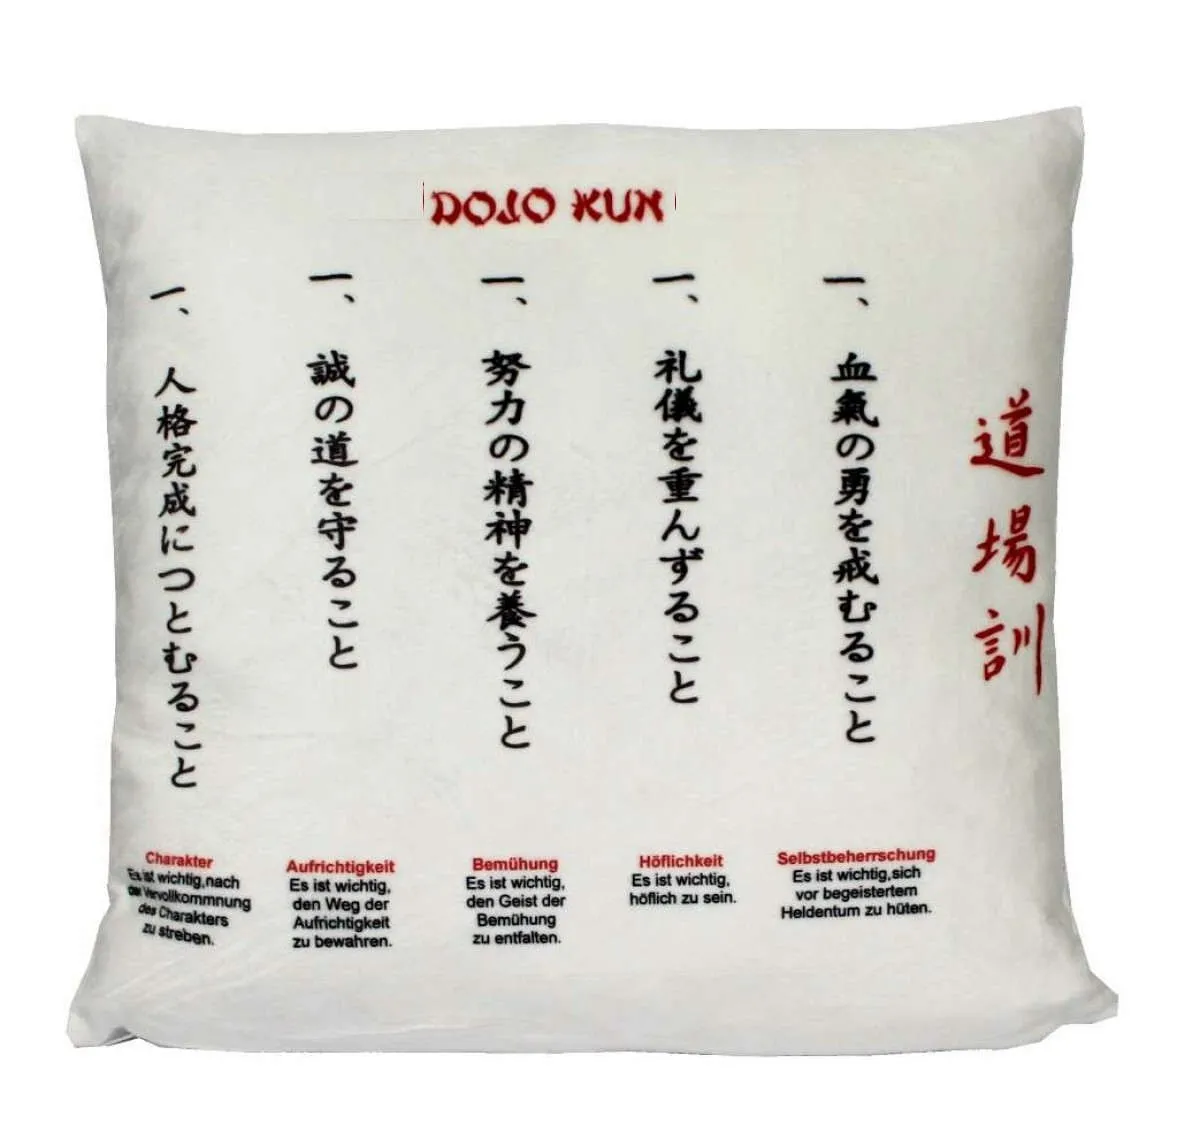 Cushion with print Dojo values